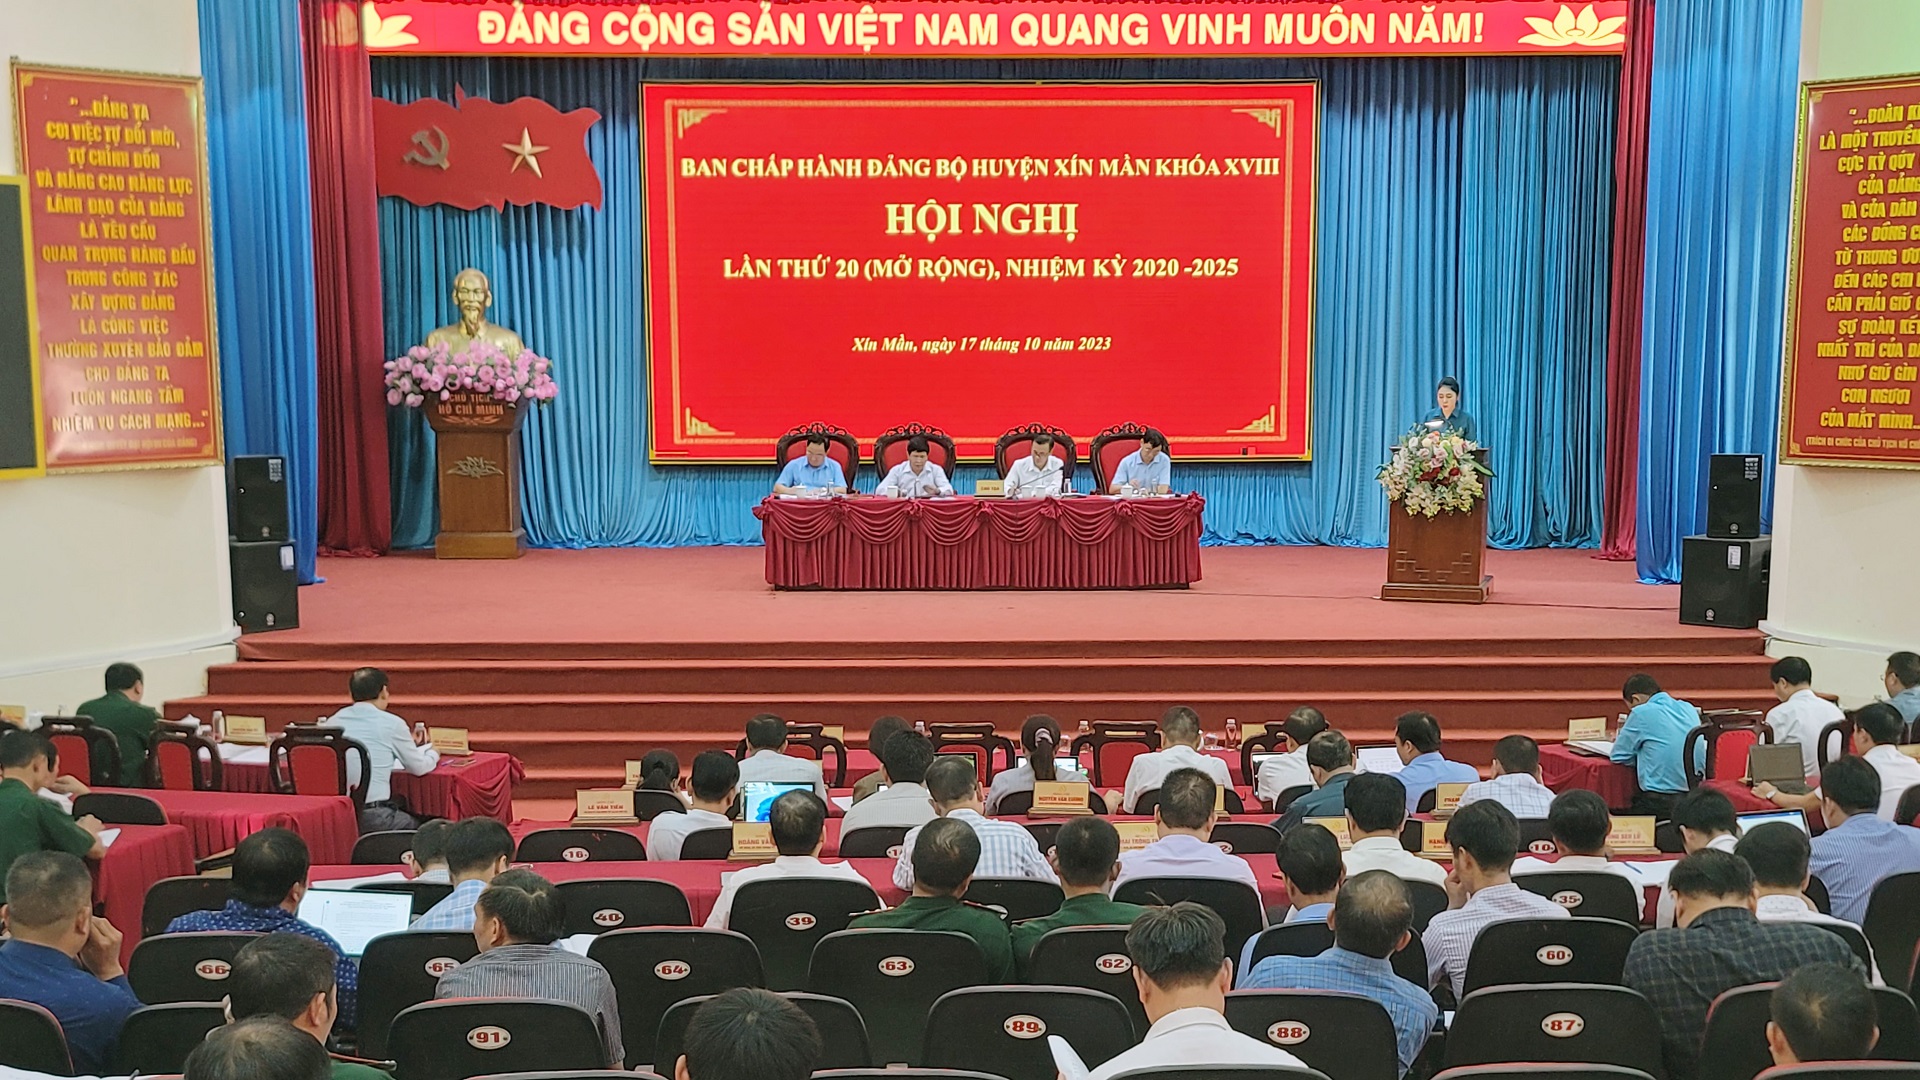 Hội nghị Ban Chấp hành Đảng bộ huyện Xín Mần lần thứ 20 (mở rộng)